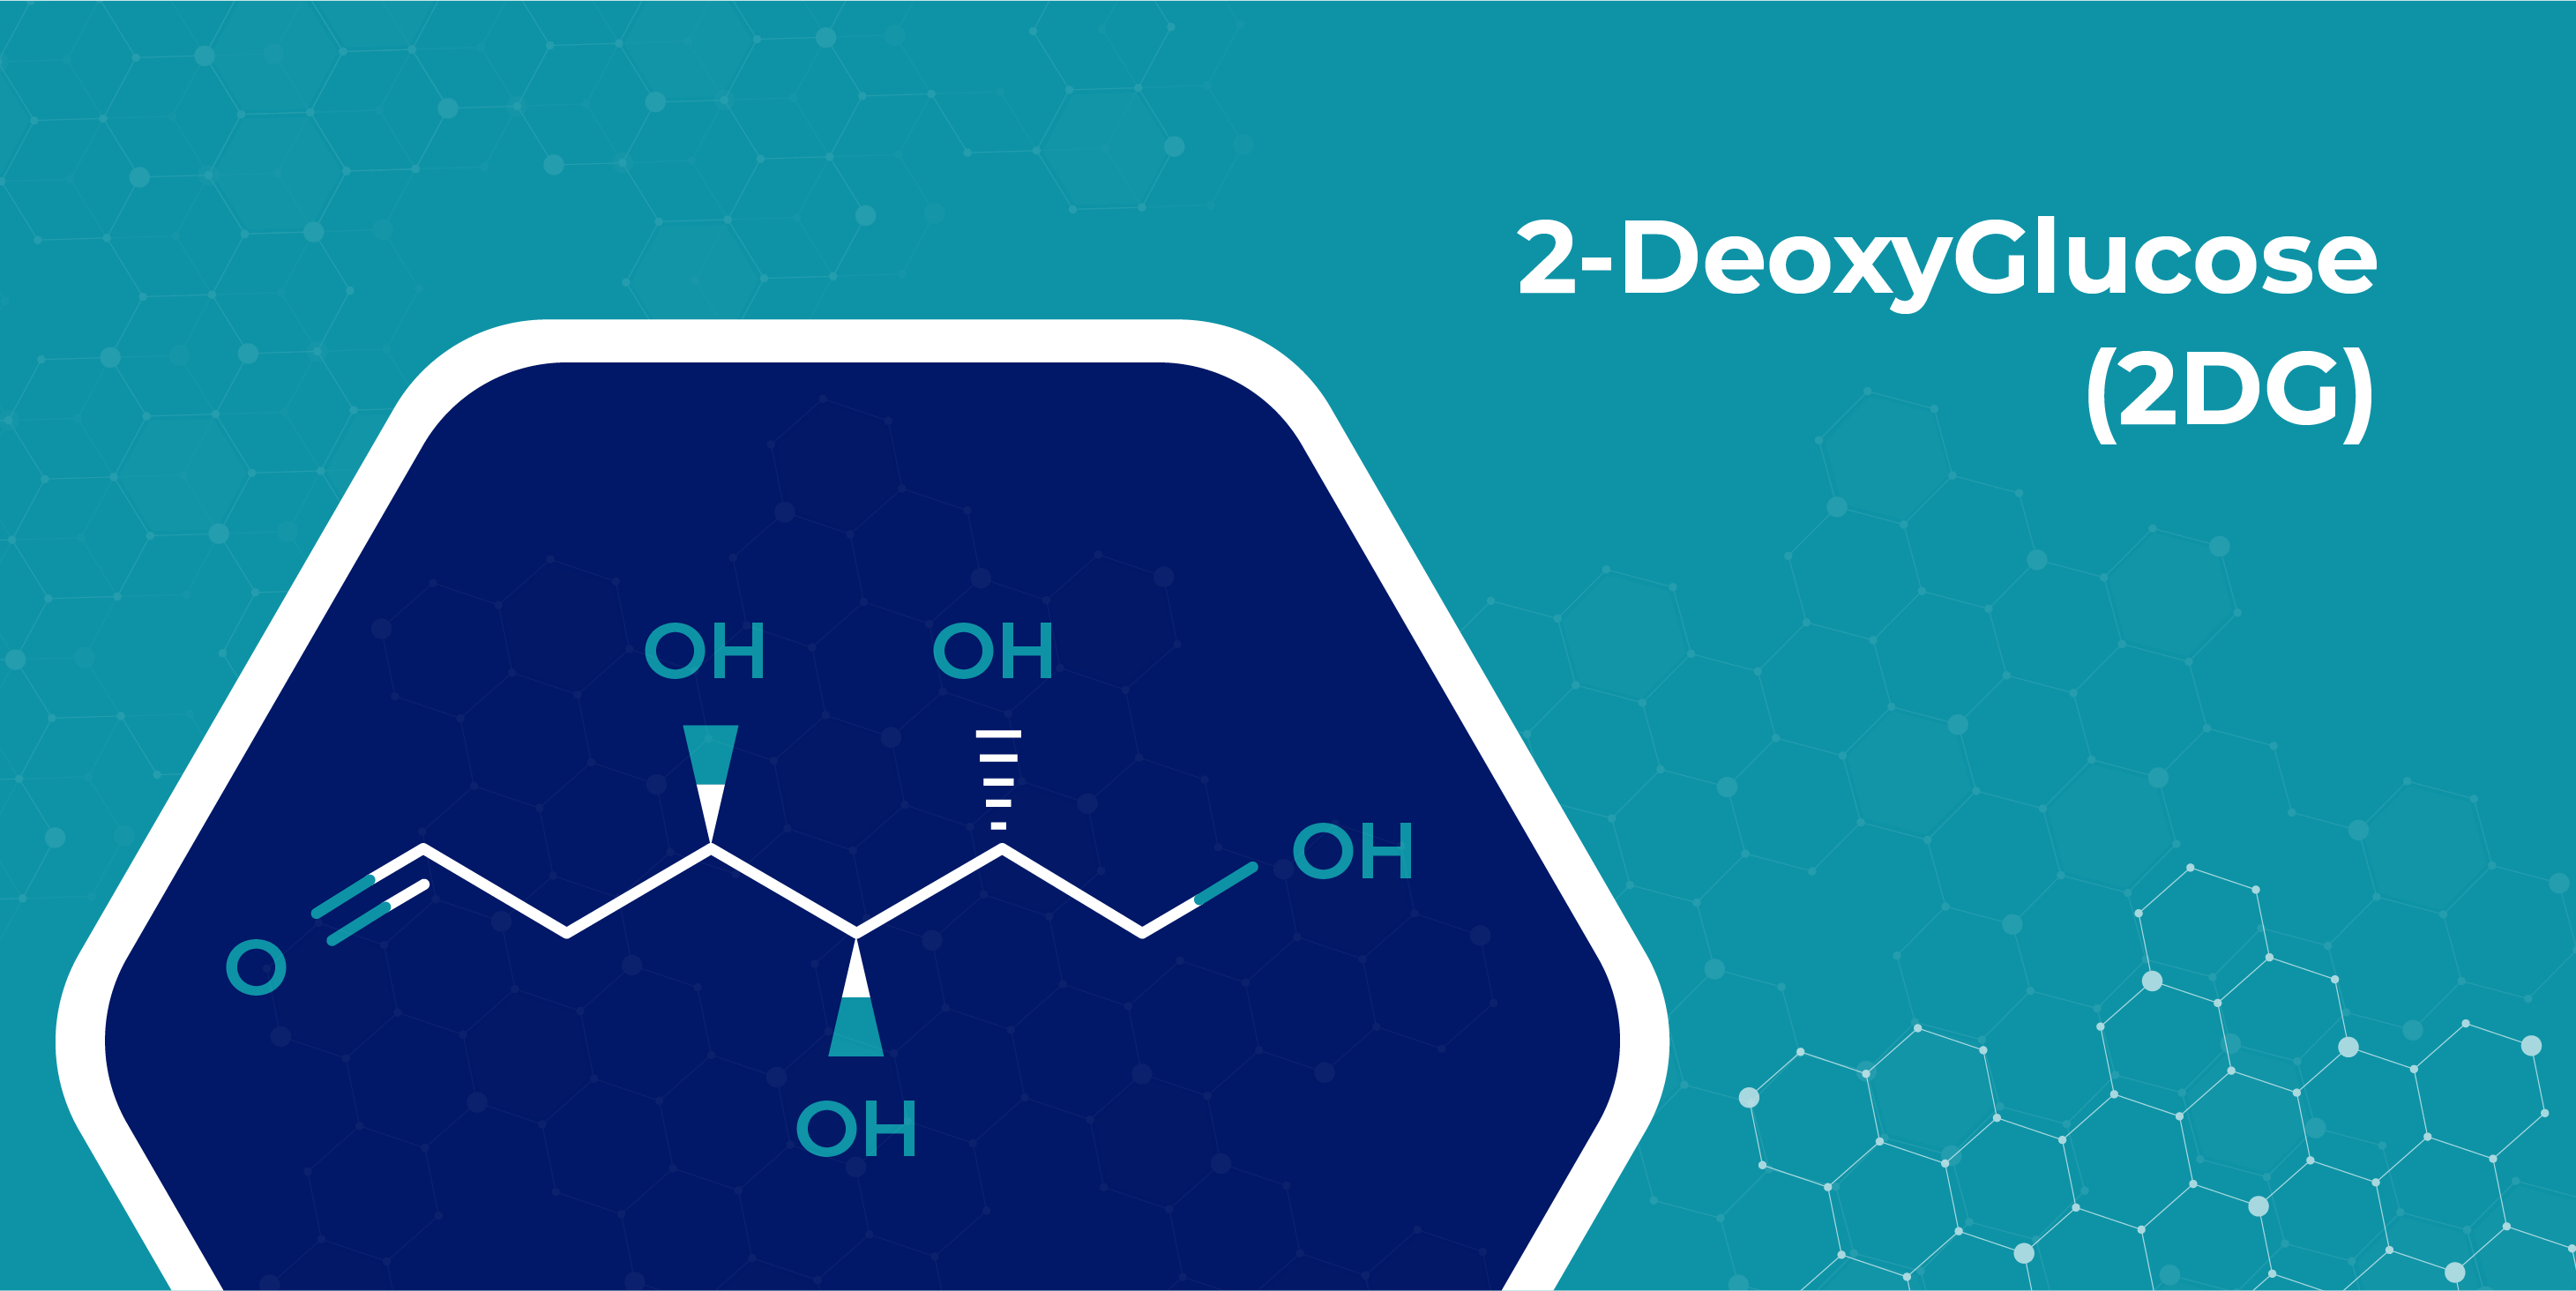 2-DeoxyGlucose (2DG)